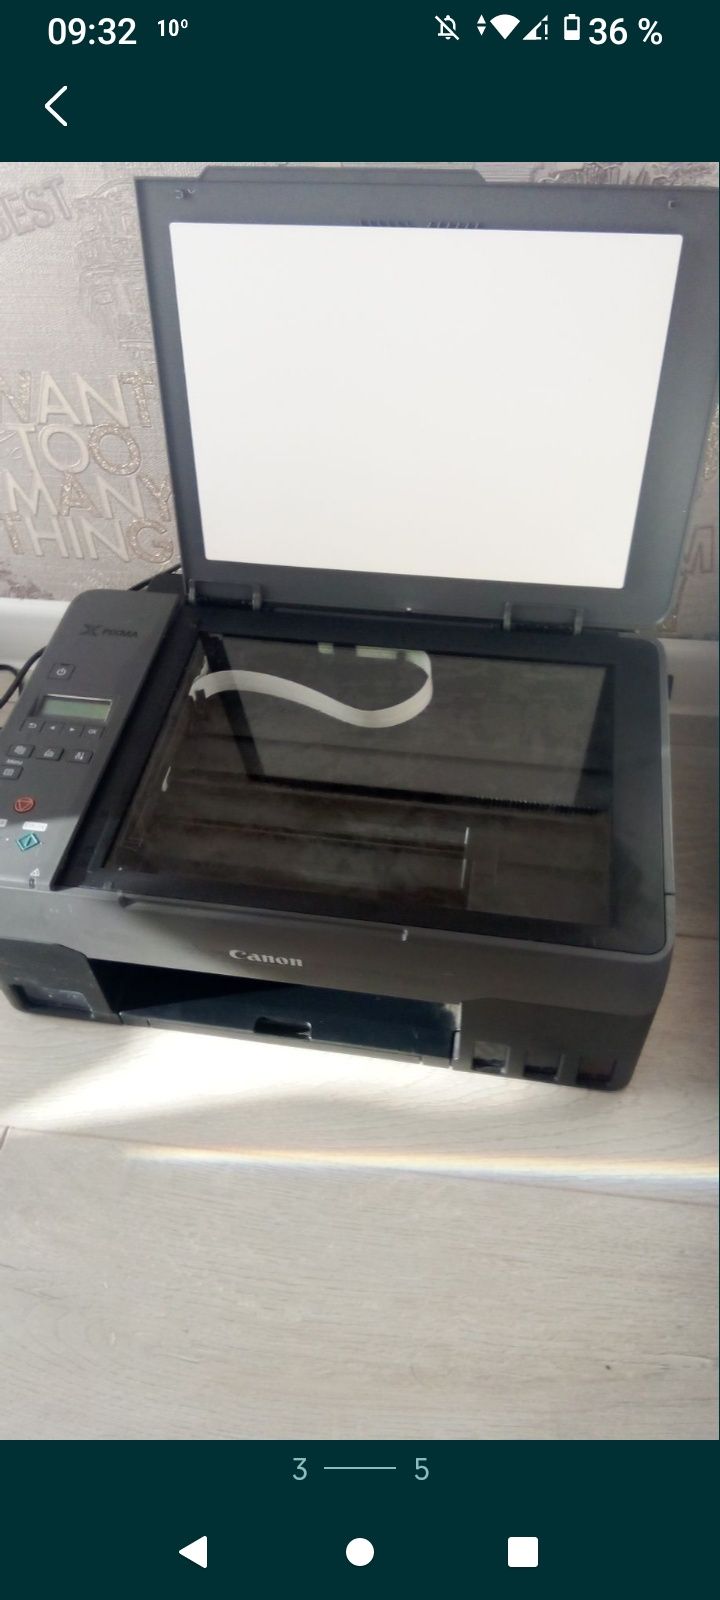 Canon-Принтер,сканер,ксерокс,фото-печать